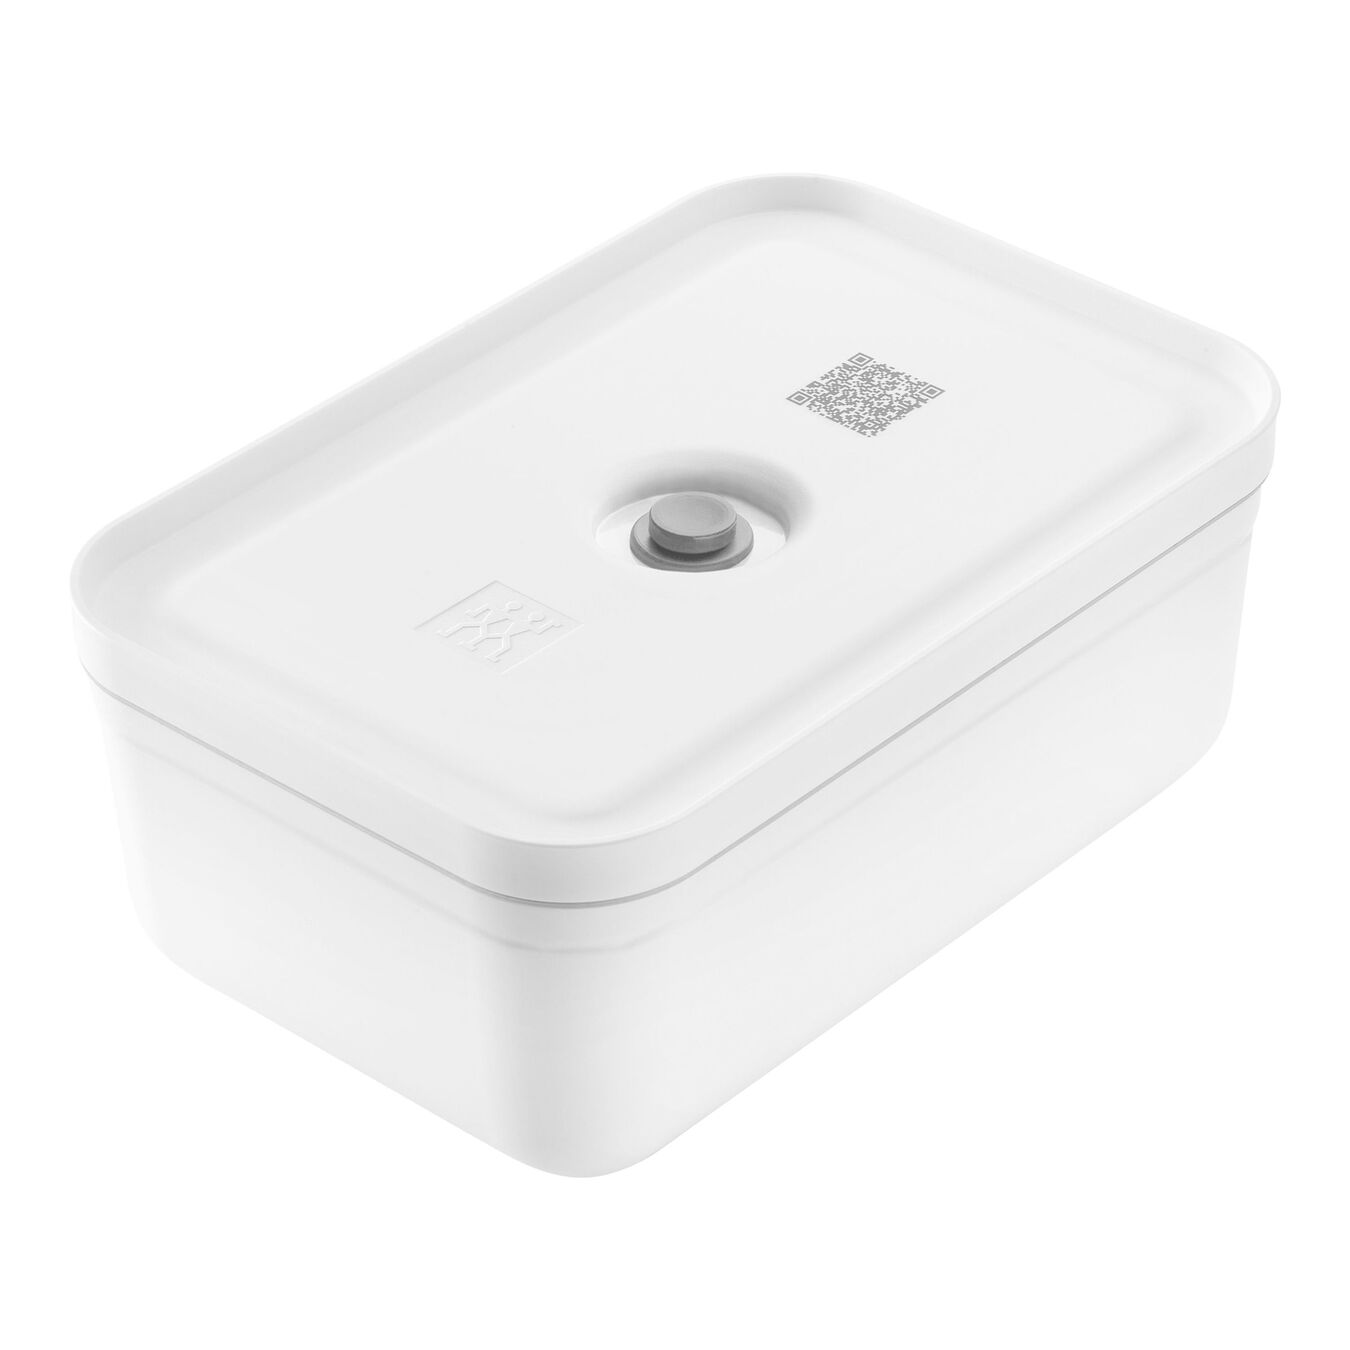 large Vacuum lunch box, plastic, white-grey,,large 1